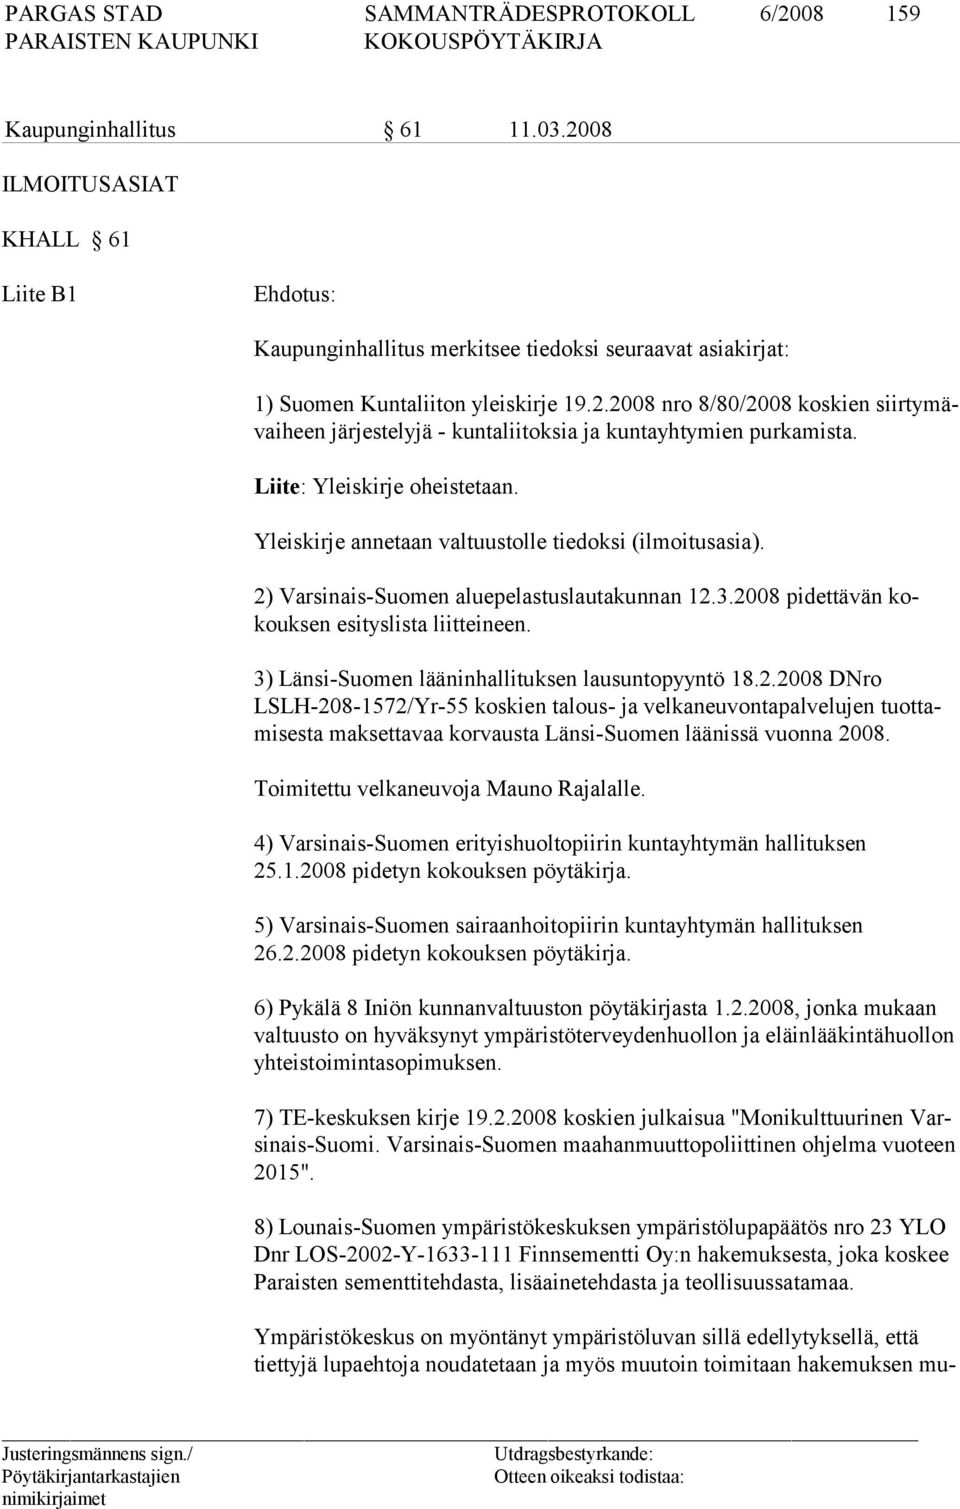 3) Länsi-Suomen lääninhallituksen lausuntopyyntö 18.2.2008 DNro LSLH-208-1572/Yr-55 koskien talous- ja velkaneuvontapalvelujen tuottamisesta maksettavaa korvausta Länsi-Suomen läänissä vuonna 2008.